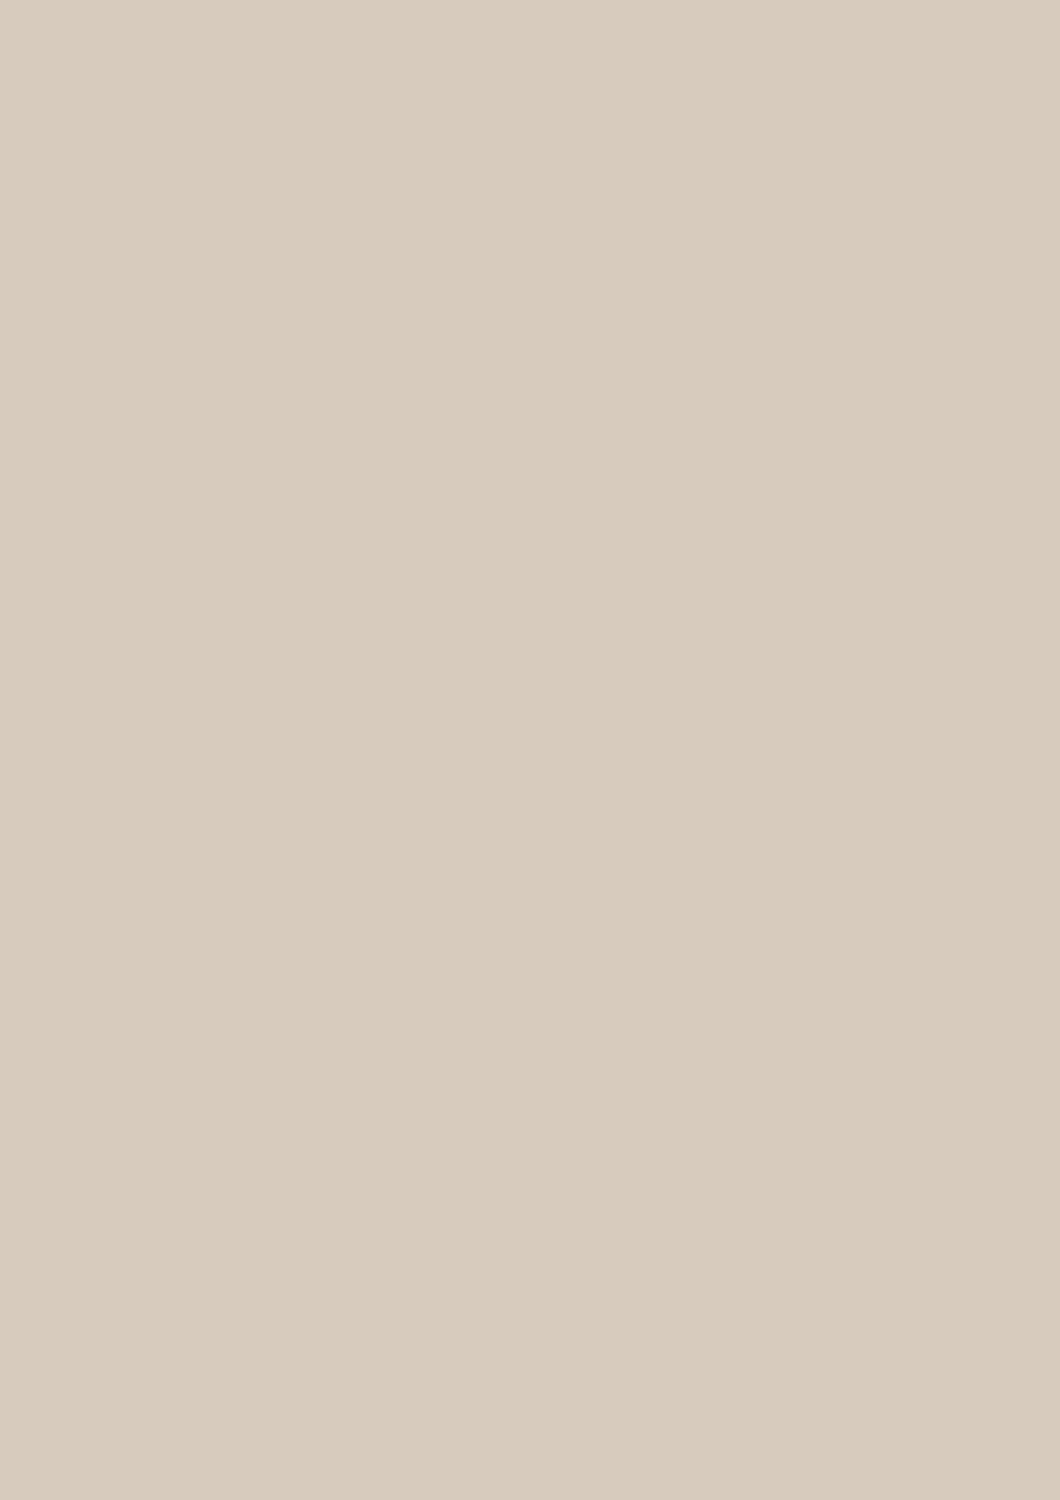 БСП  Кашемир серый PT, 2800*1310*0,8мм